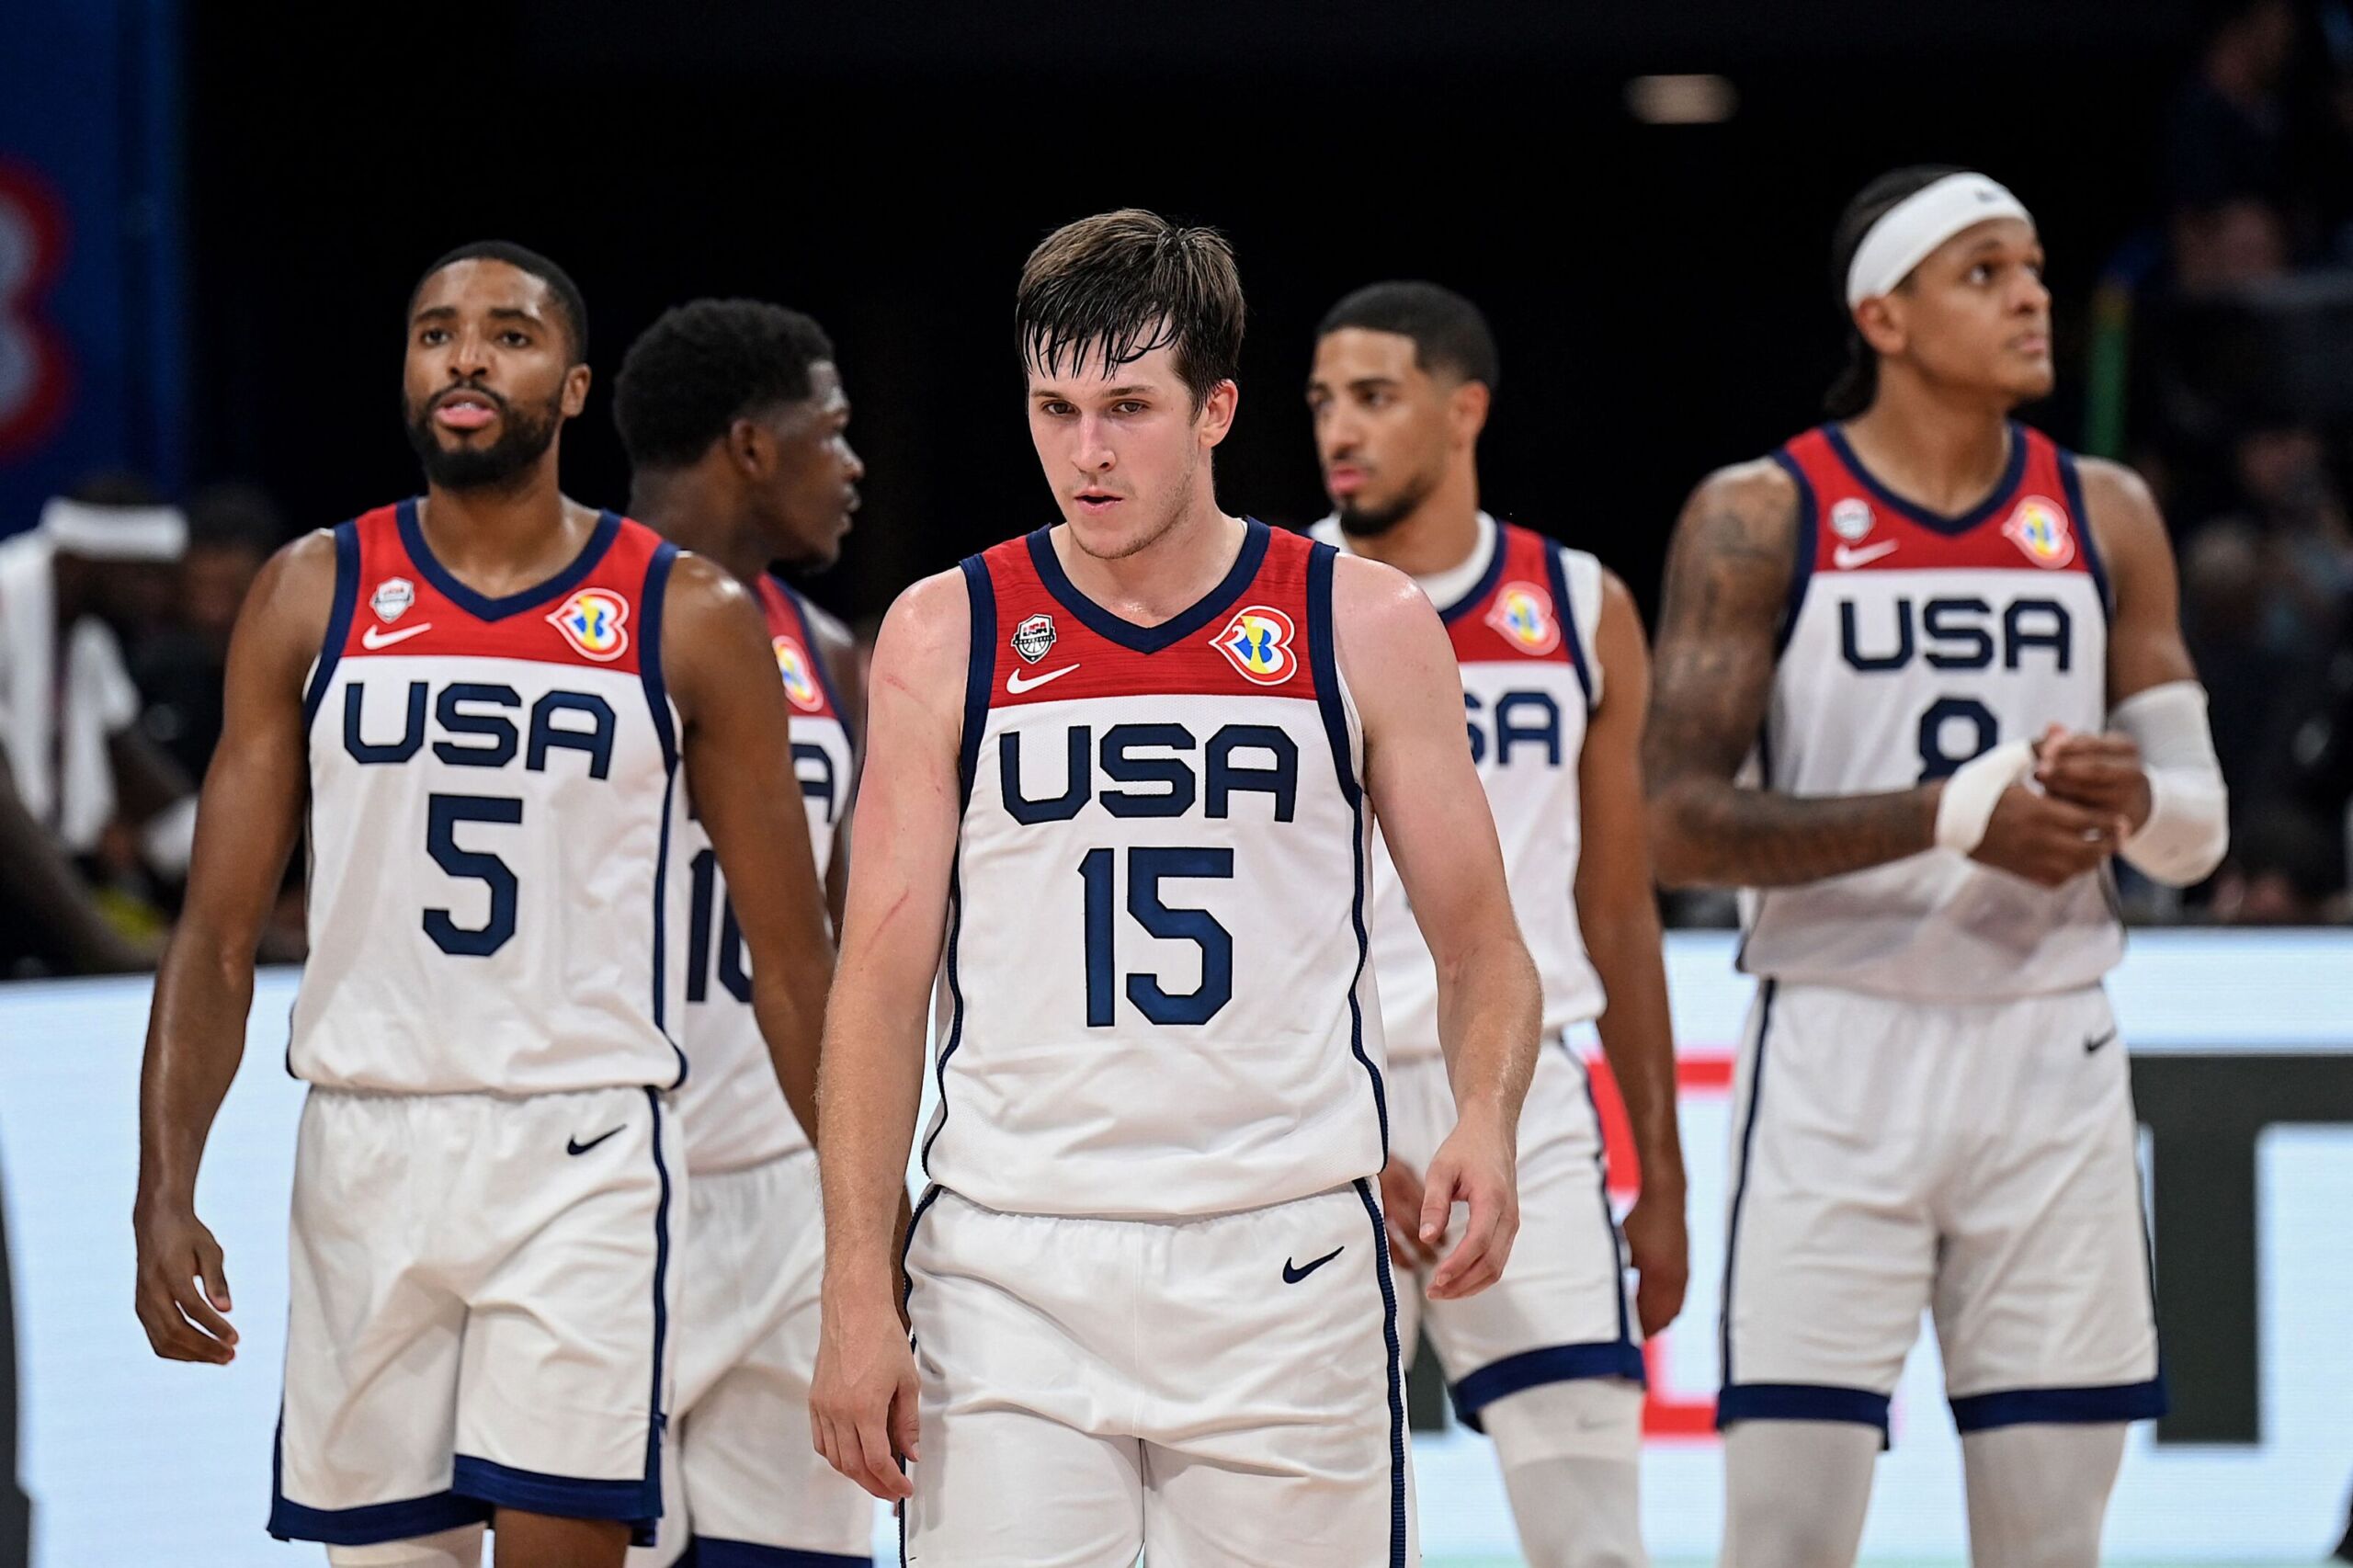 USA's basketball team during the Men's Basketball Final, USA vs